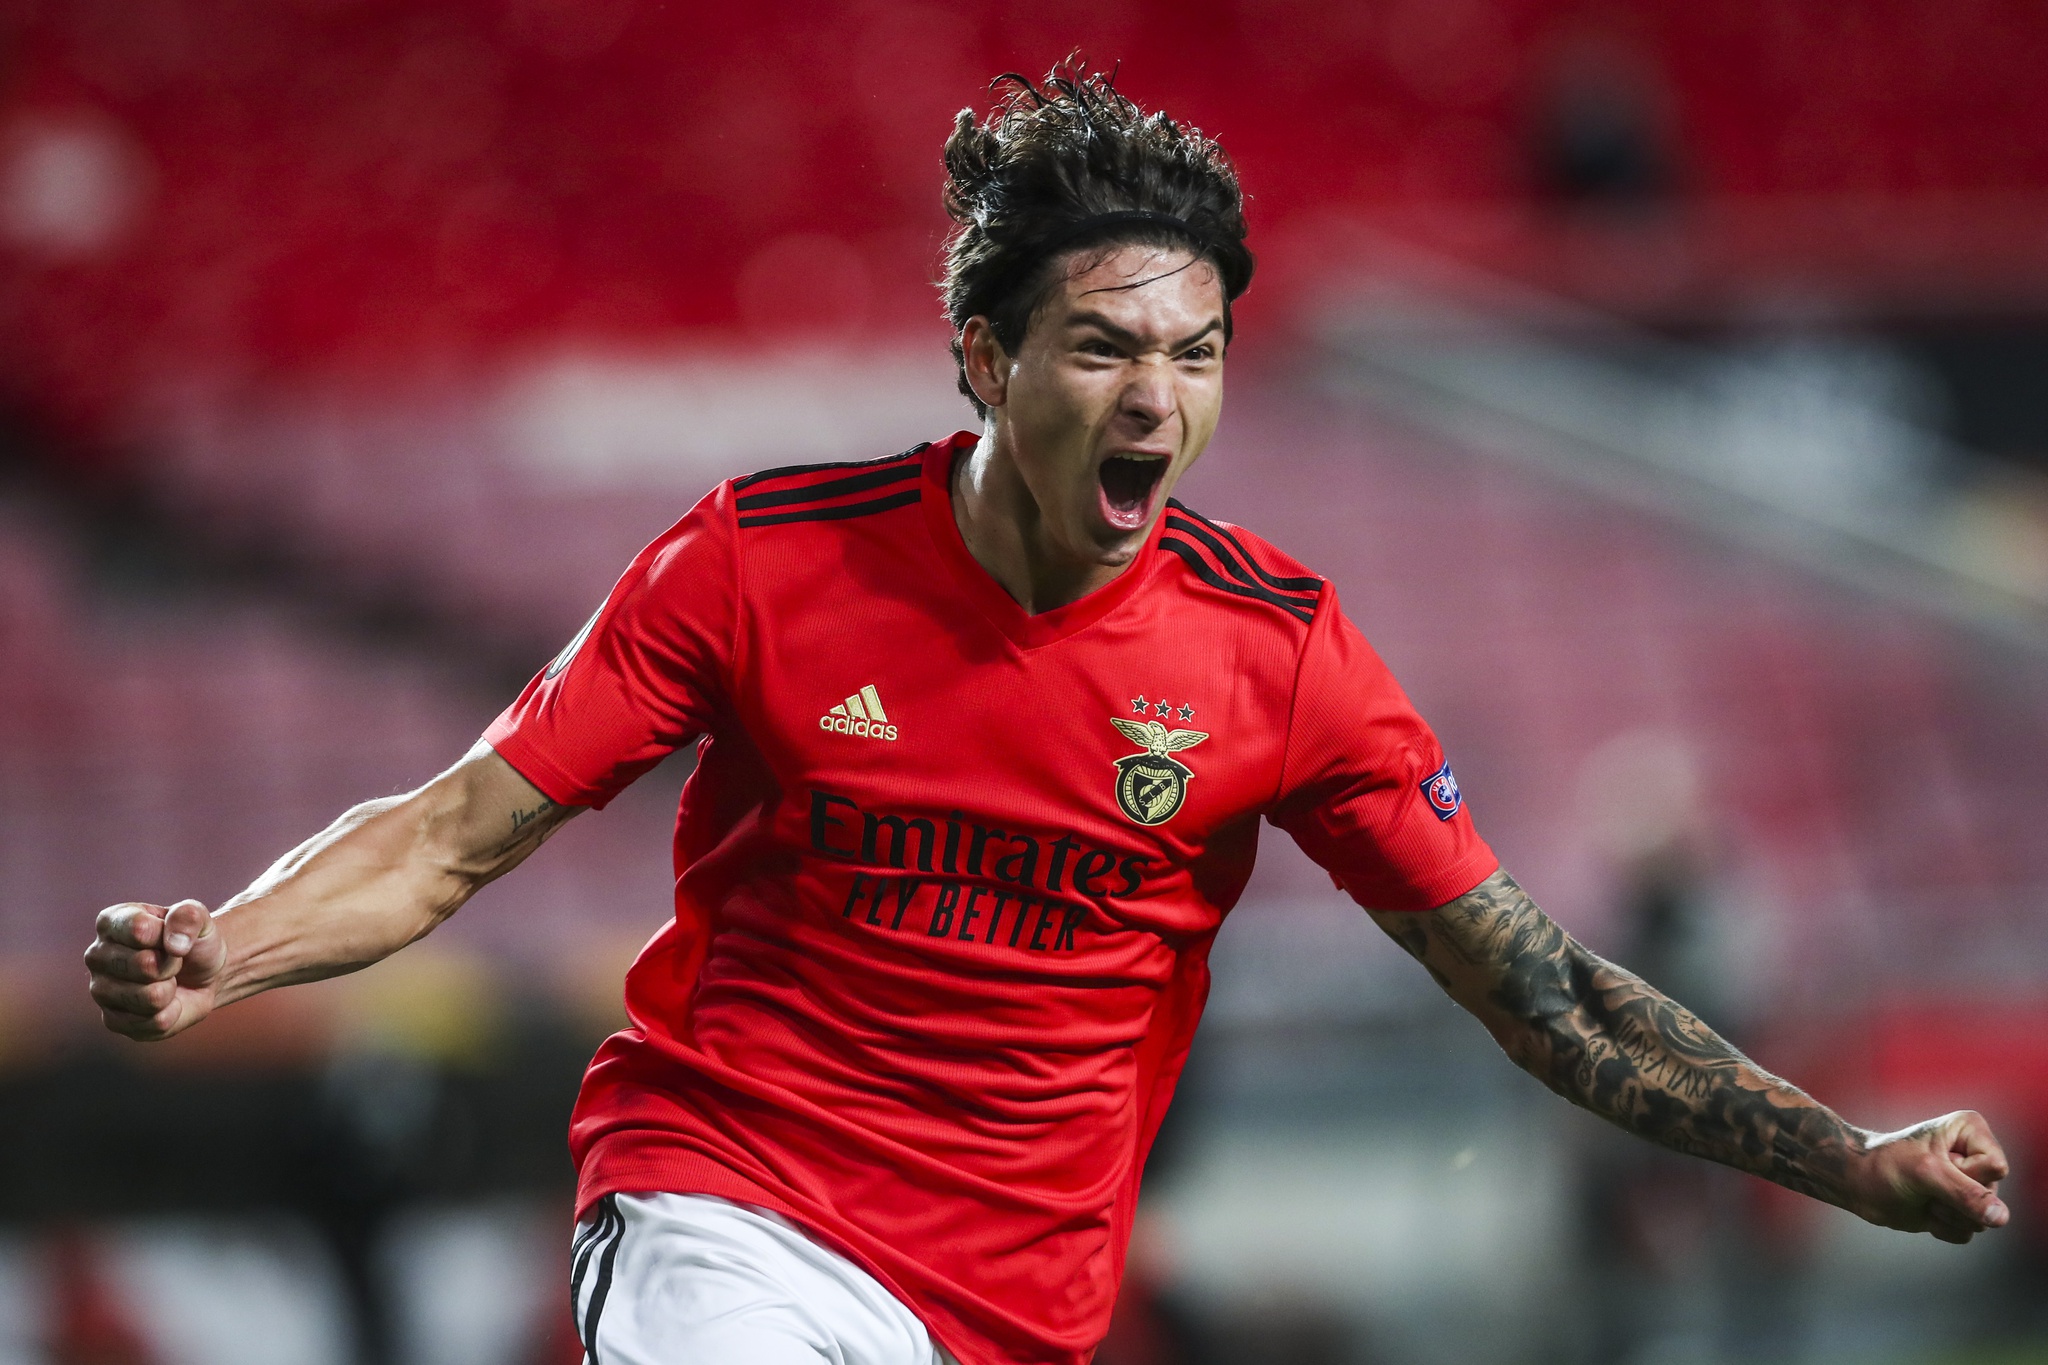 Jogador mais valioso fora dos principais campeonatos joga no Benfica